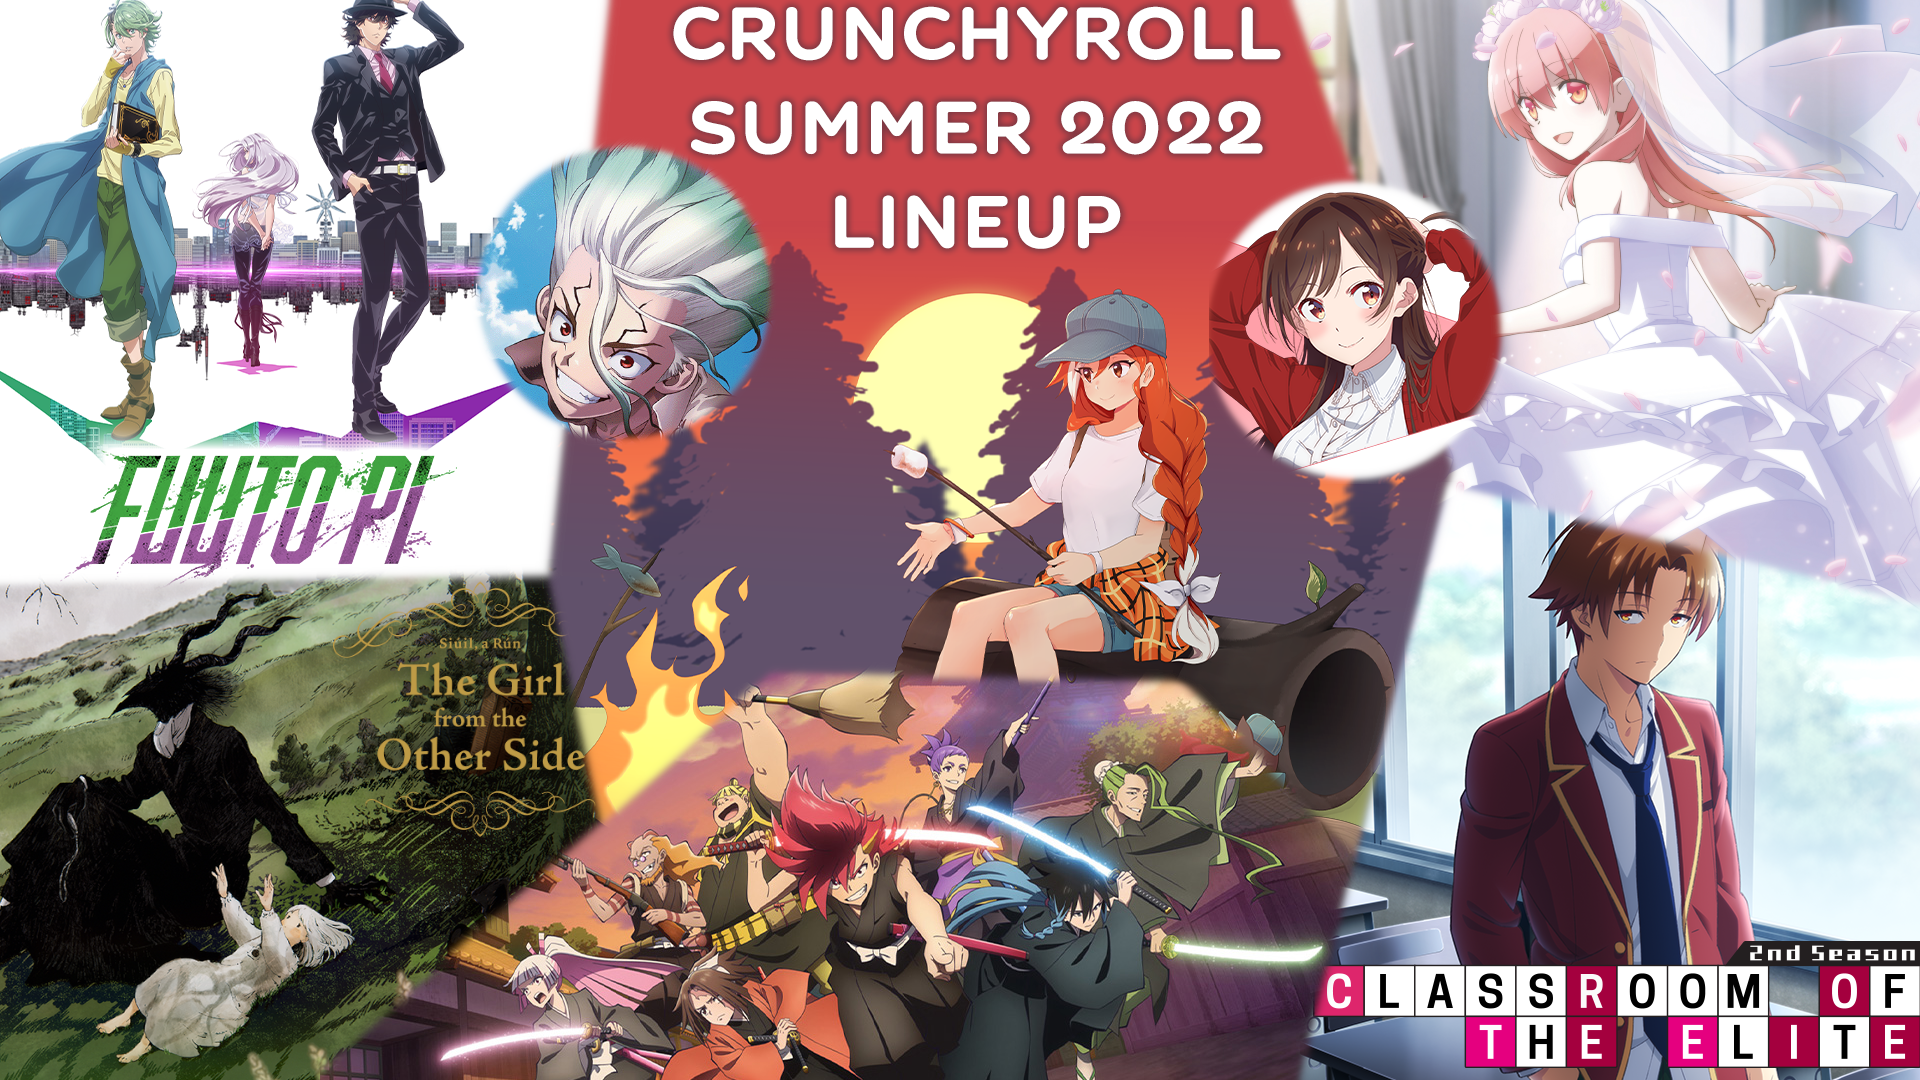 Crunchyroll Summer 2022 Lineup Announced